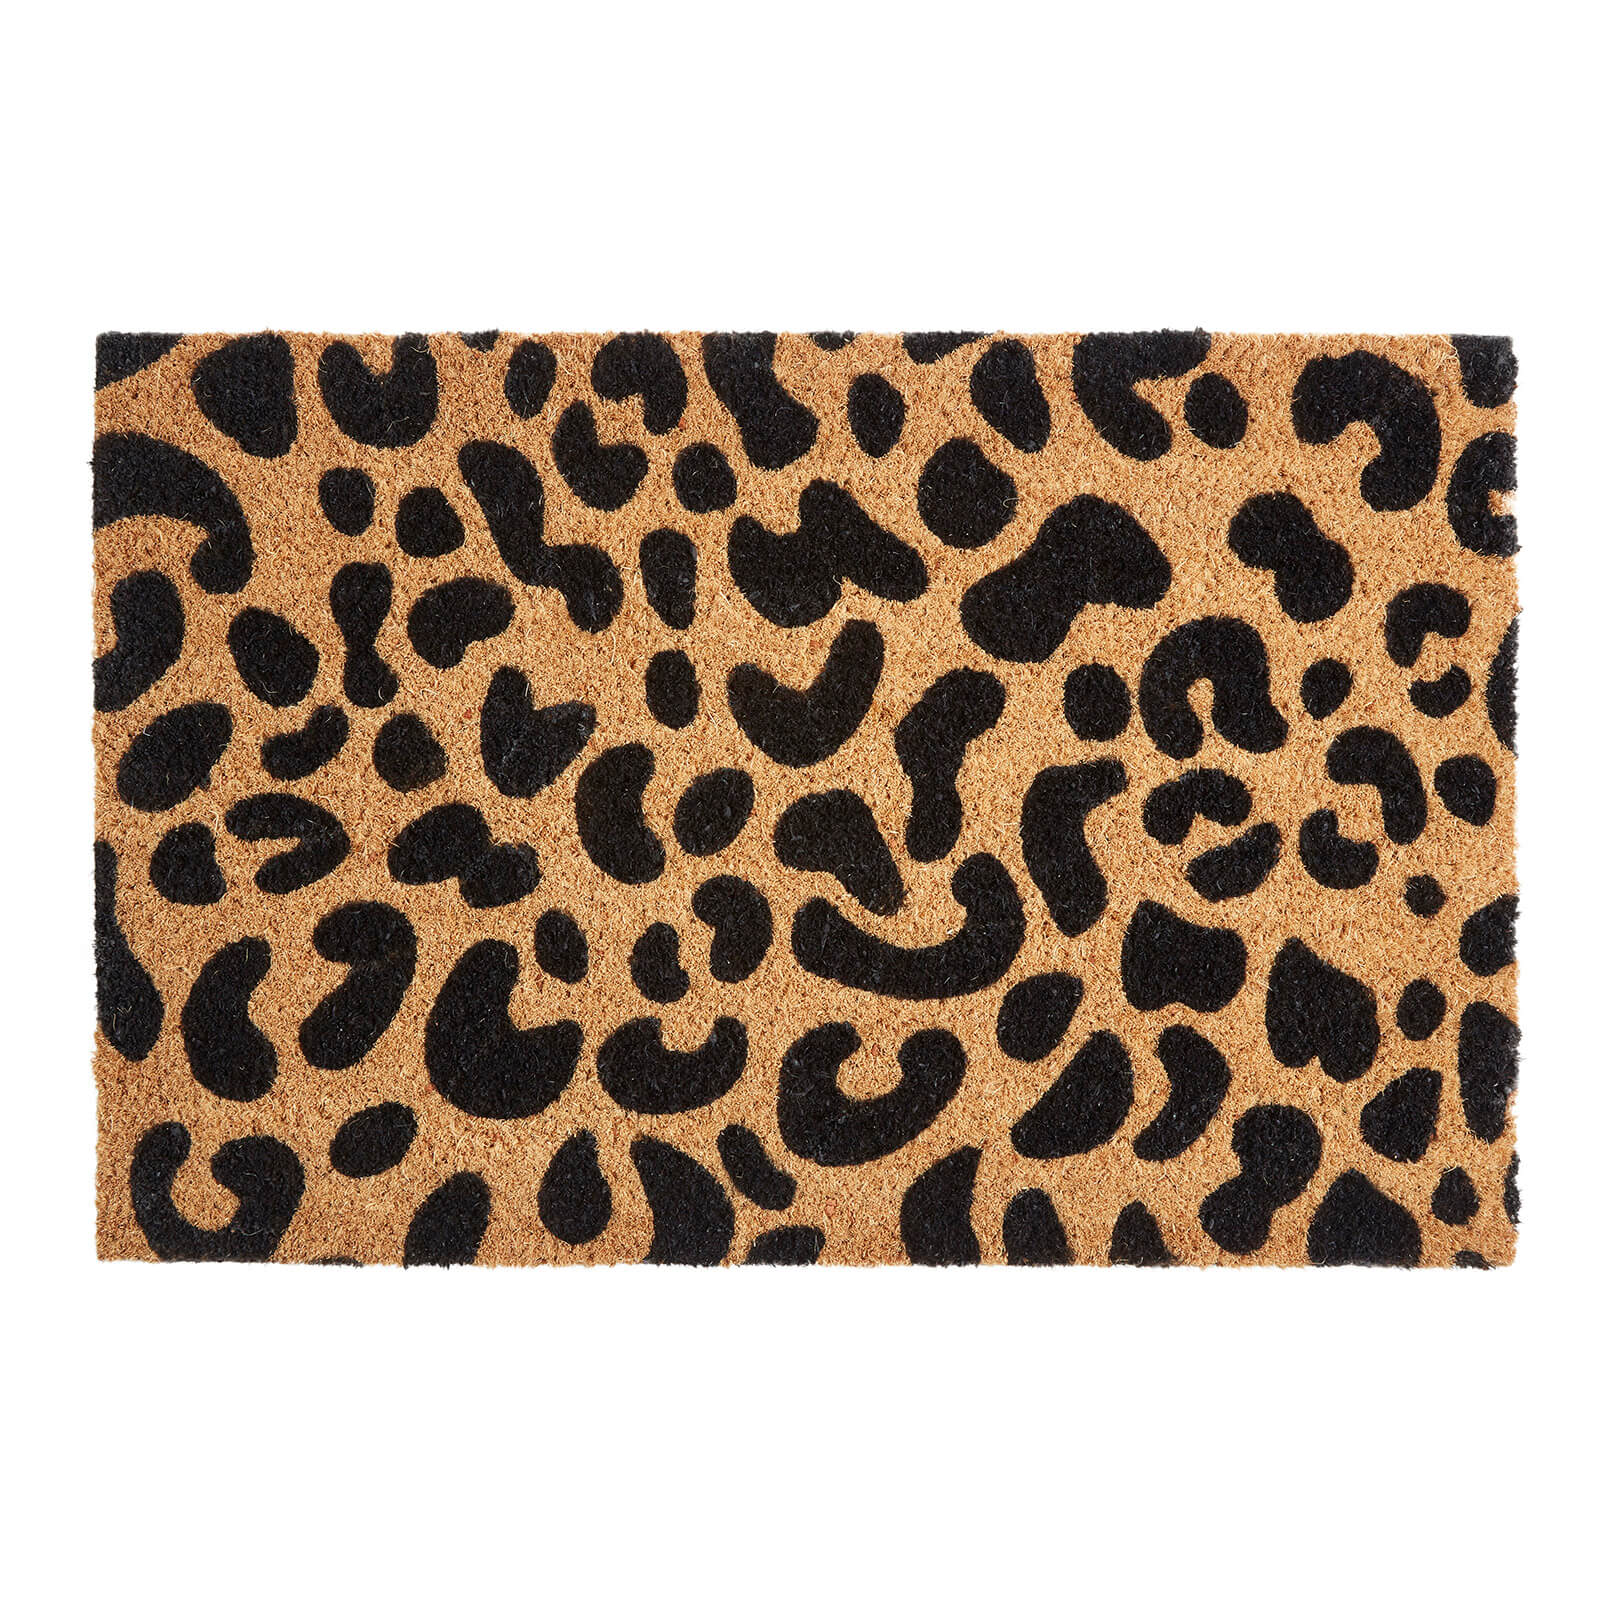 Leopard Print Doormat - Coir